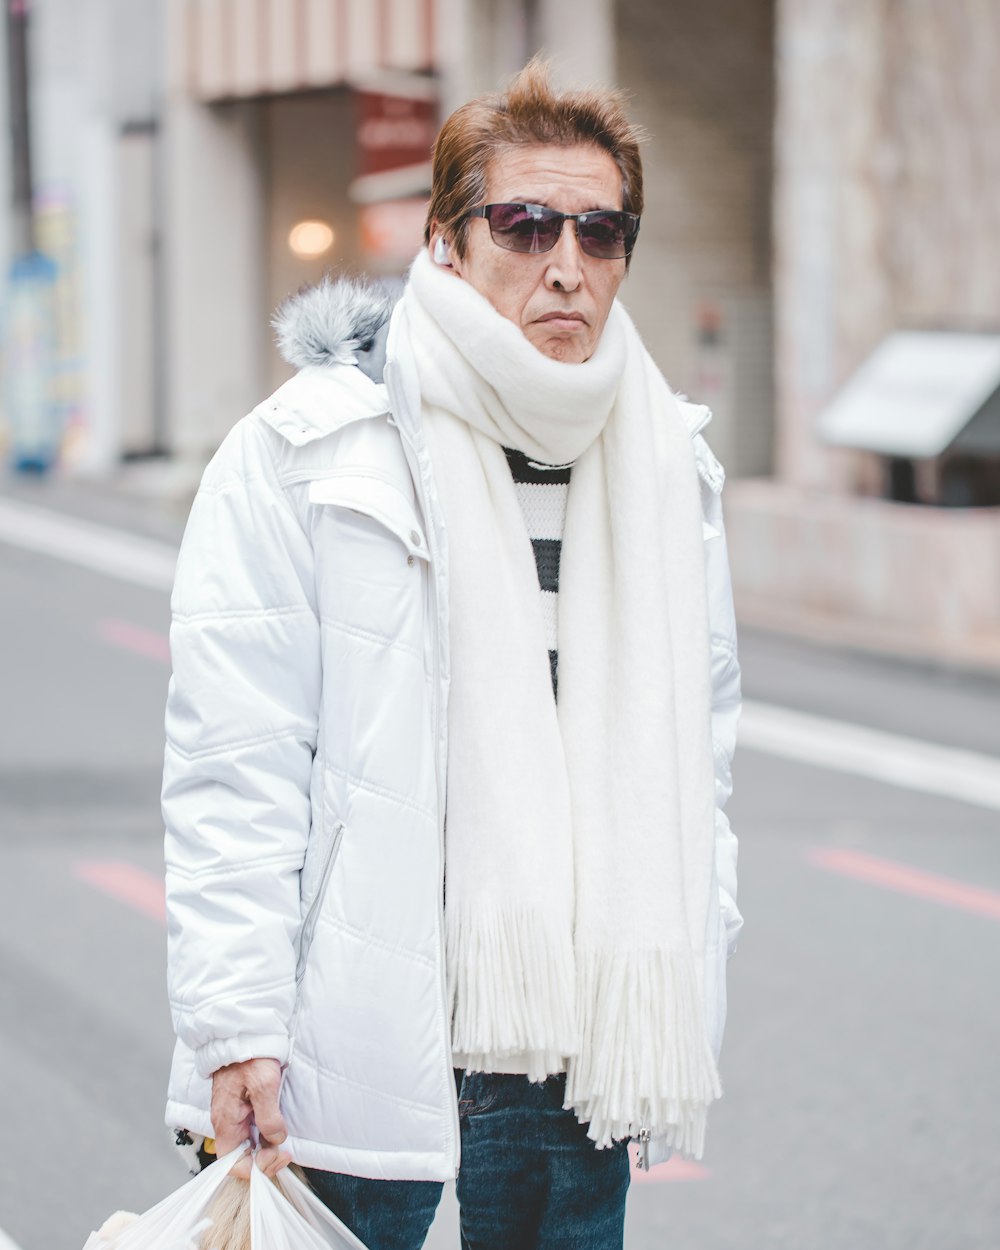 Homem em jaqueta Parka branca e lenço branco andando na rua durante o dia